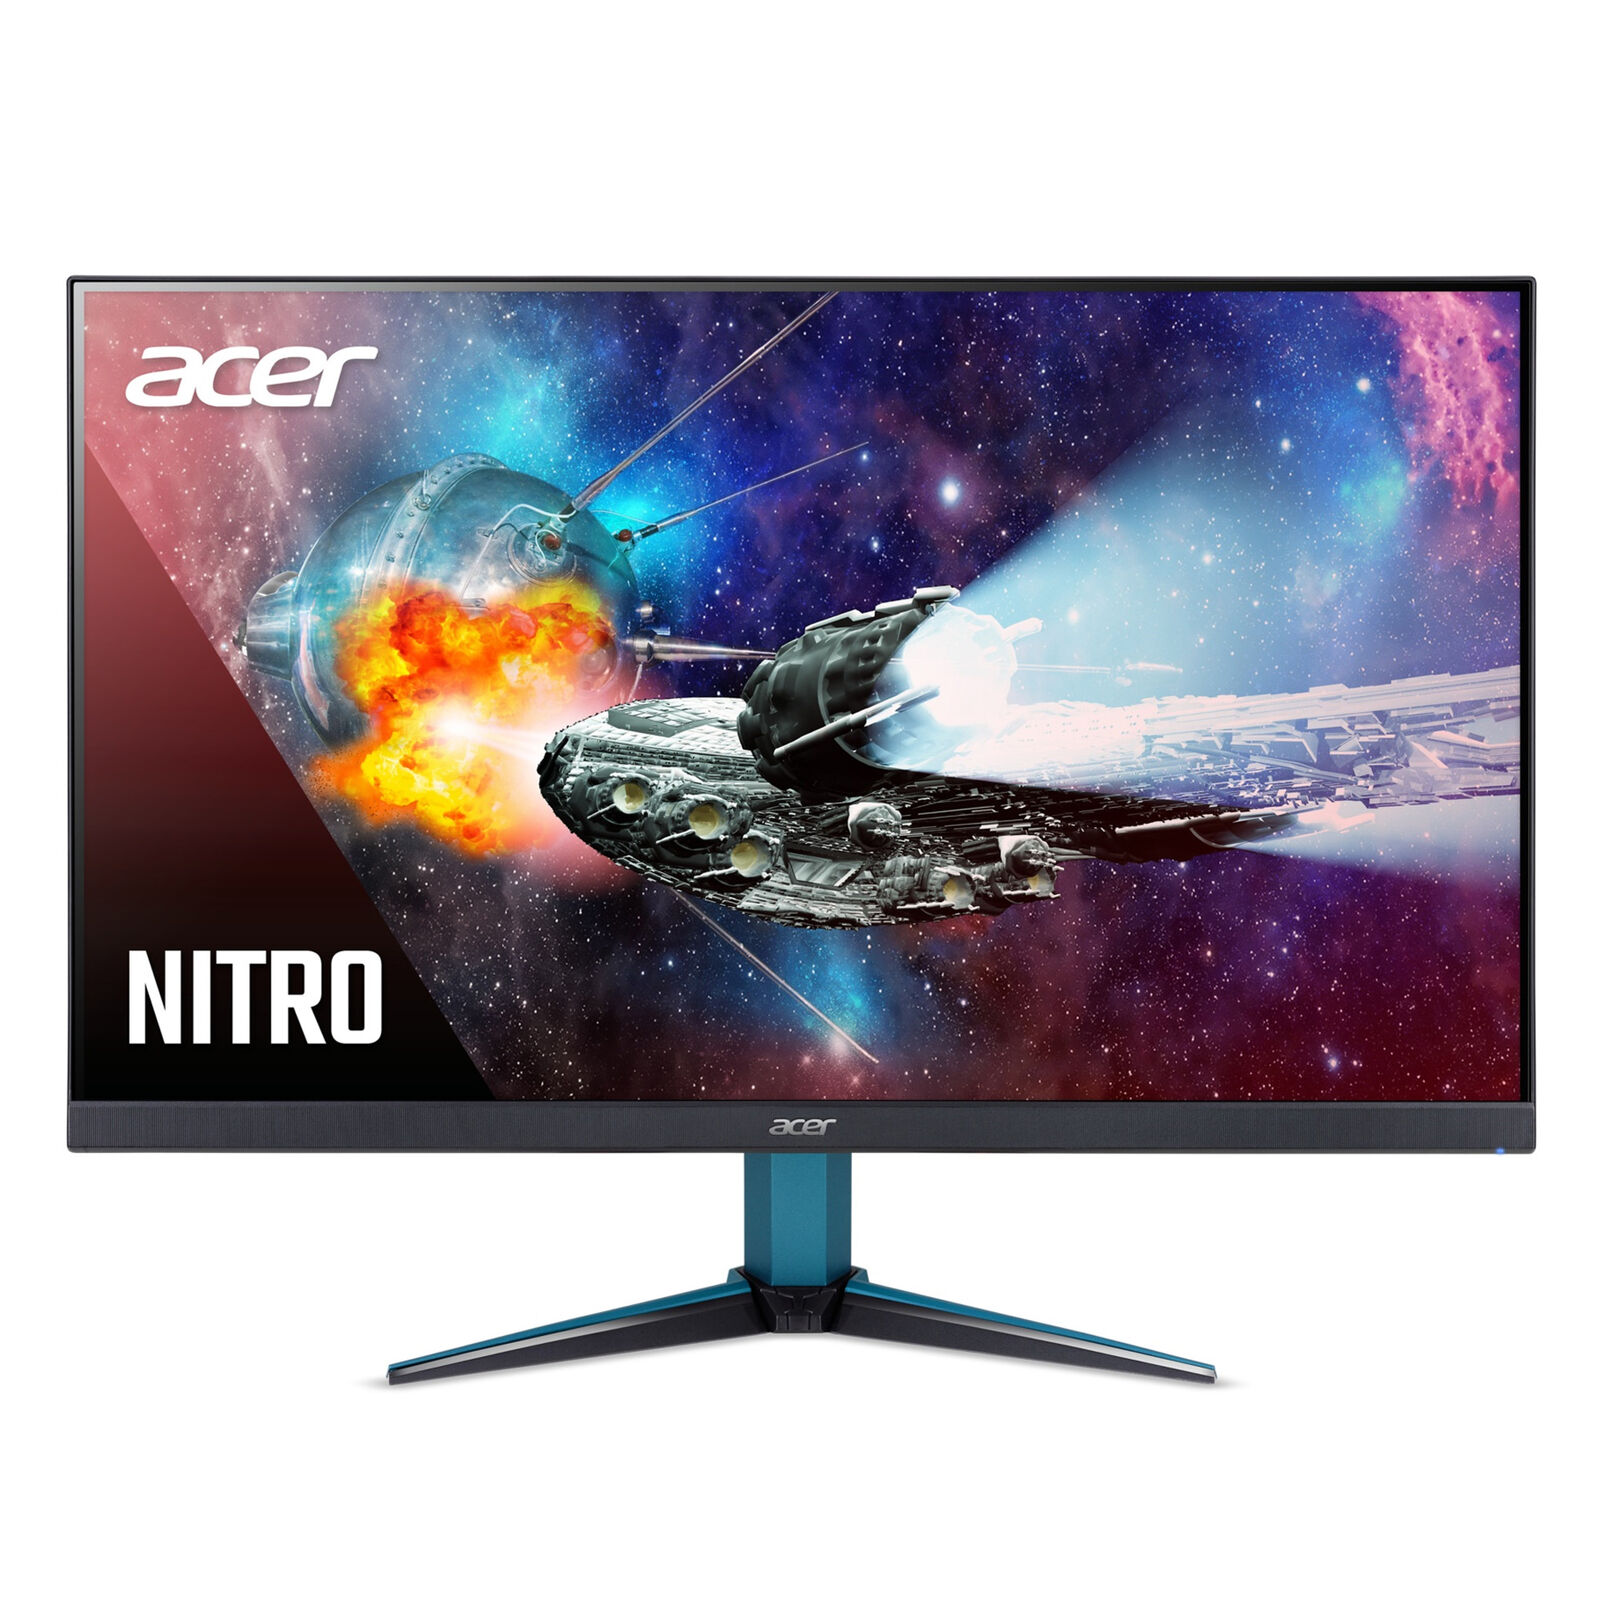 Acer Nitro VG272U - 27